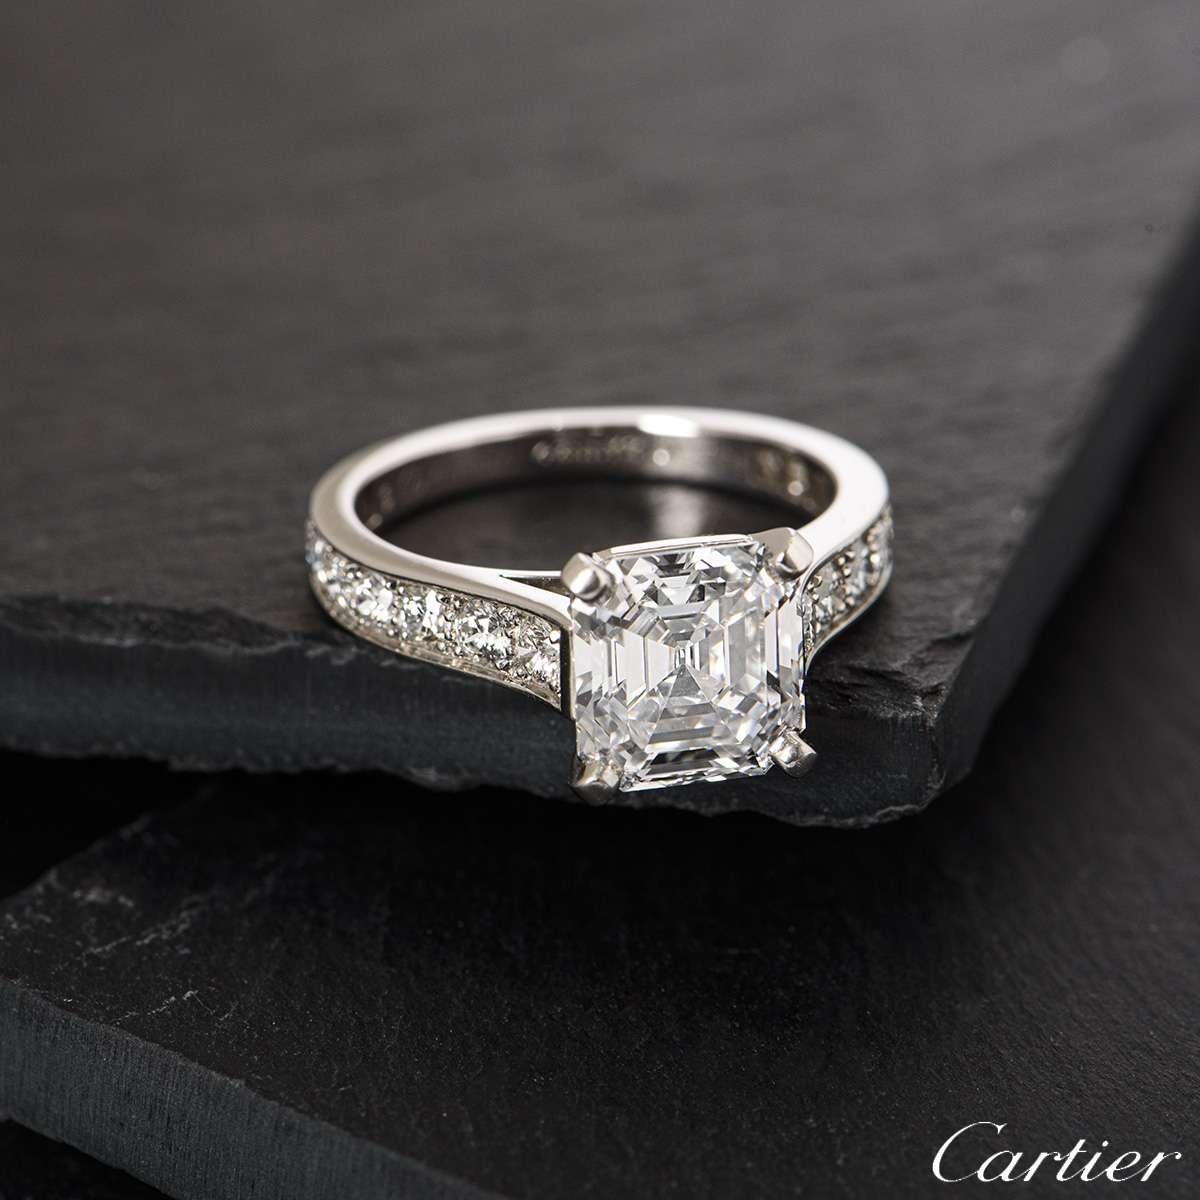 Cartier Solitaire 1895 Asscher Cut Diamond Engagement Ring 2.76 Carat D ...